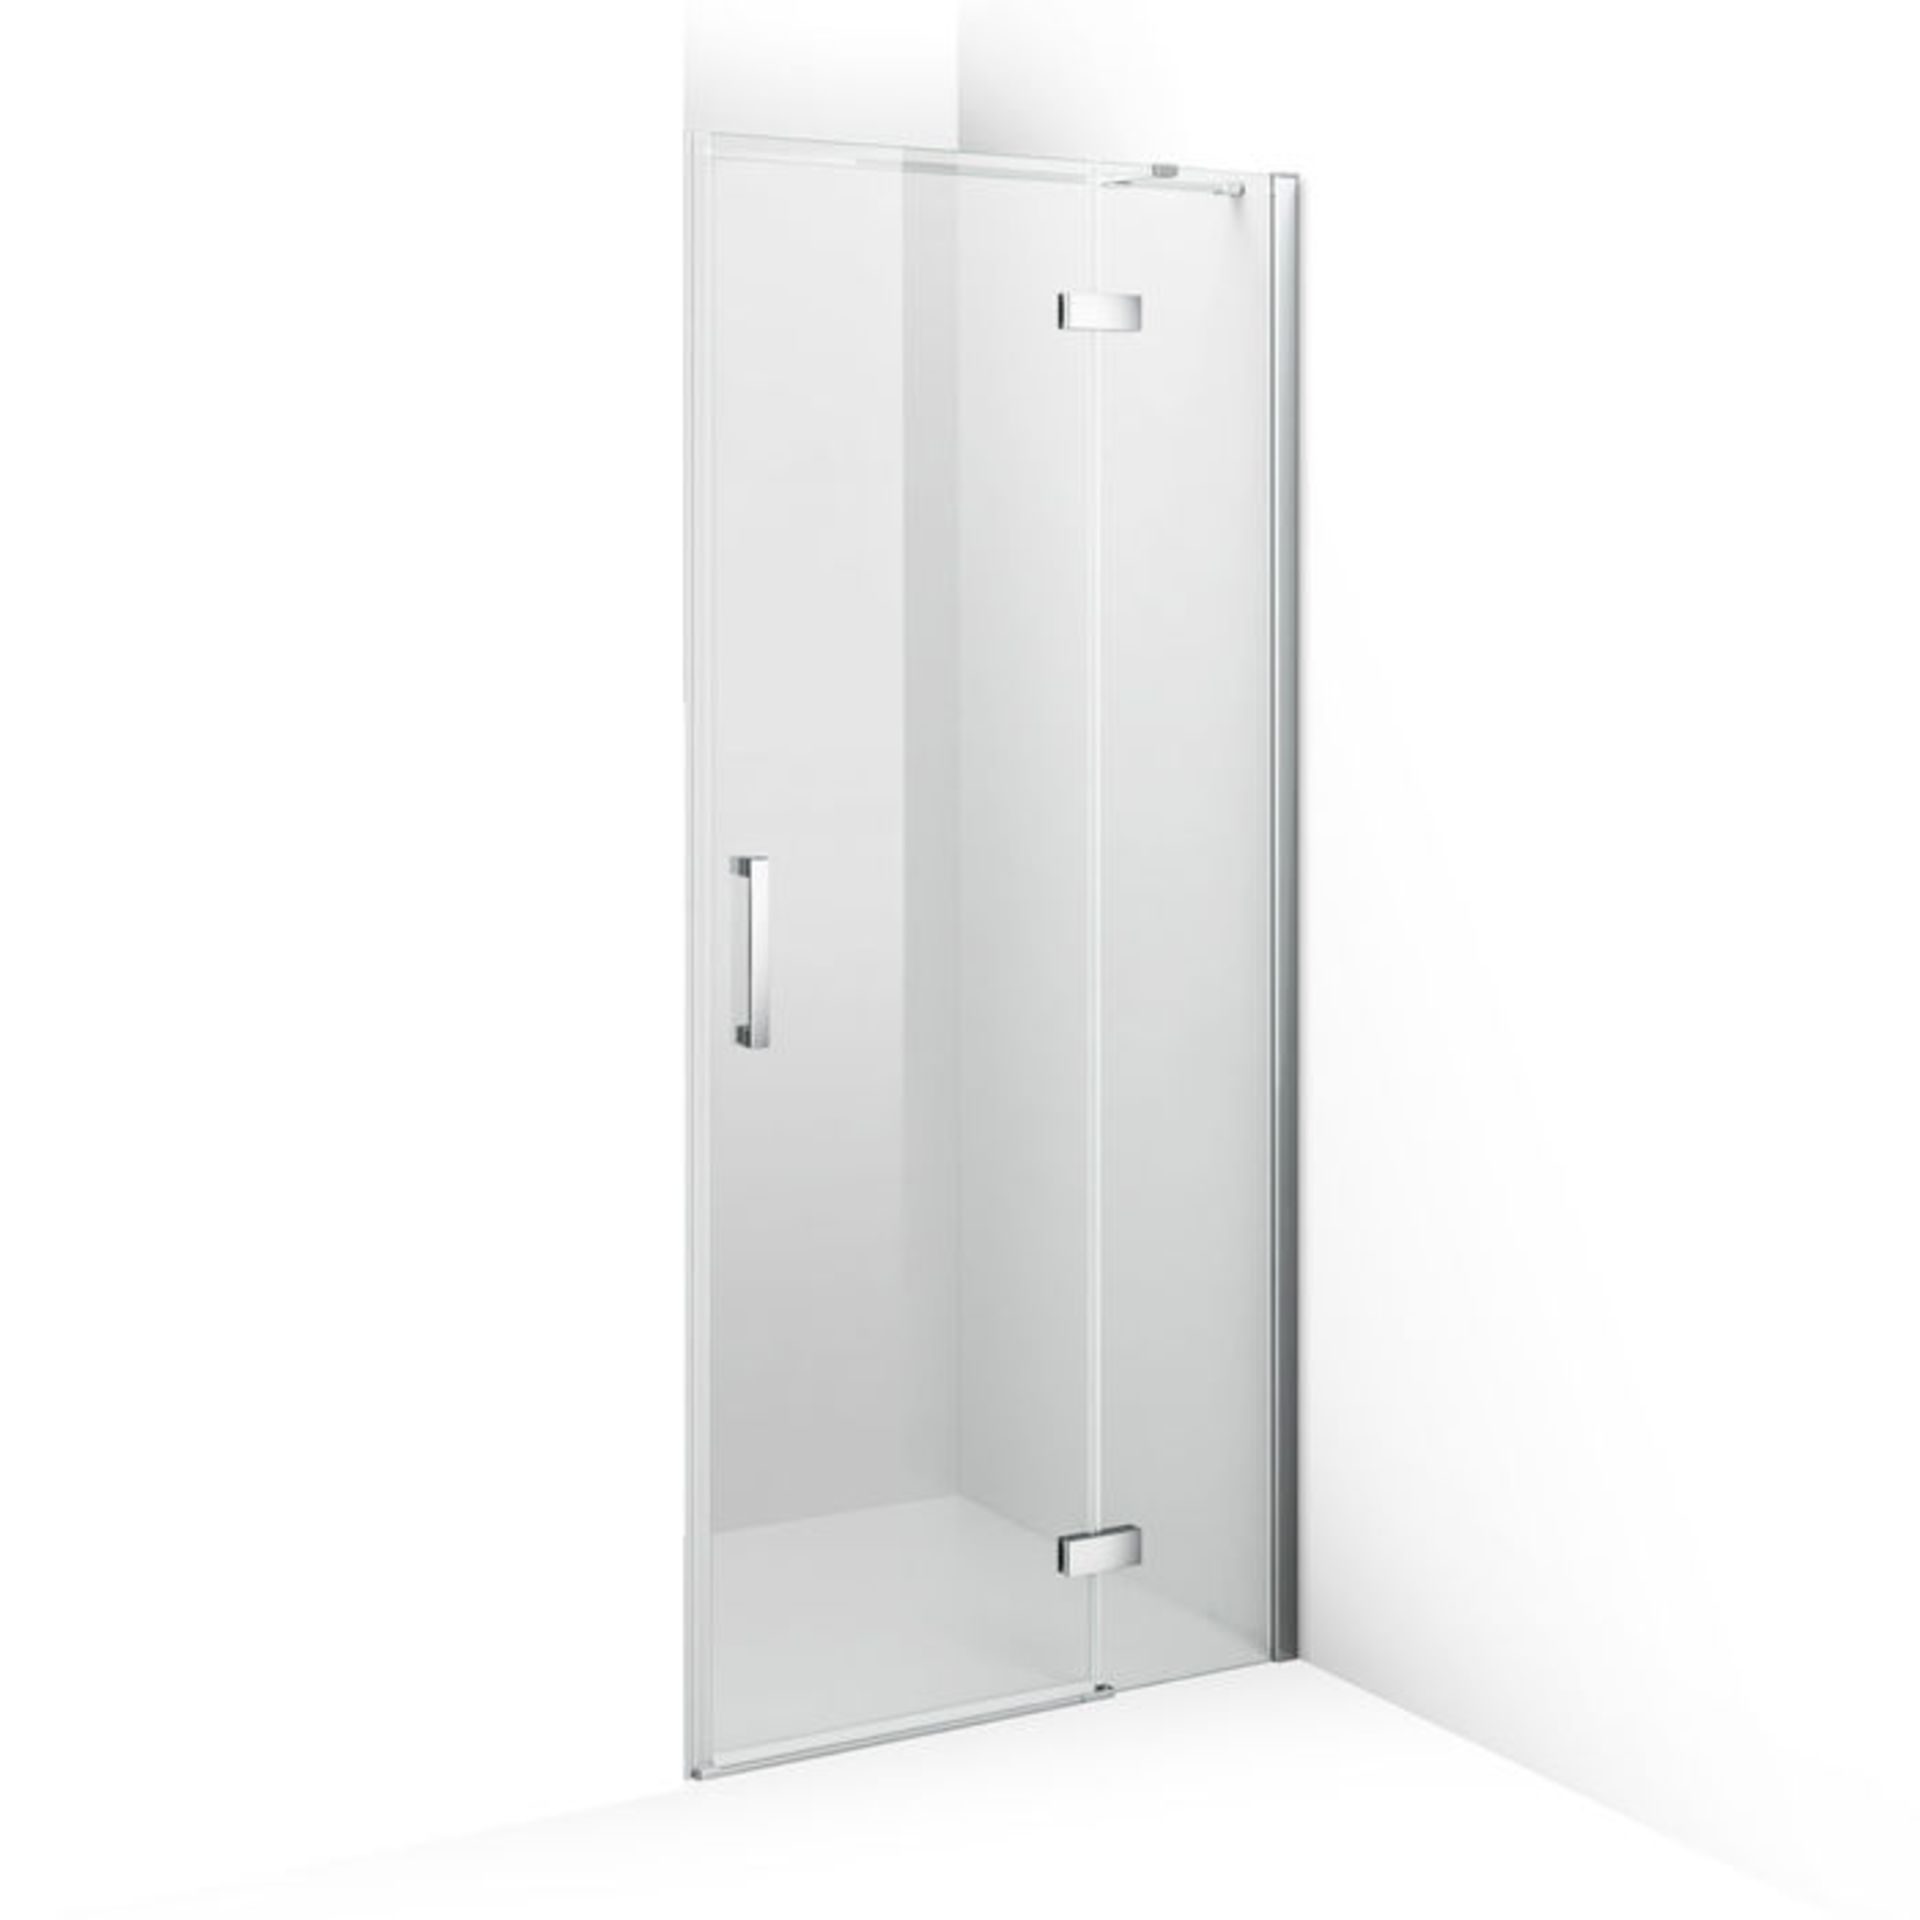 (P33) 1000mm - 8mm - Premium EasyClean Hinged Shower Door. RRP £499.99. 8mm EasyClean glass - Our - Image 5 of 5